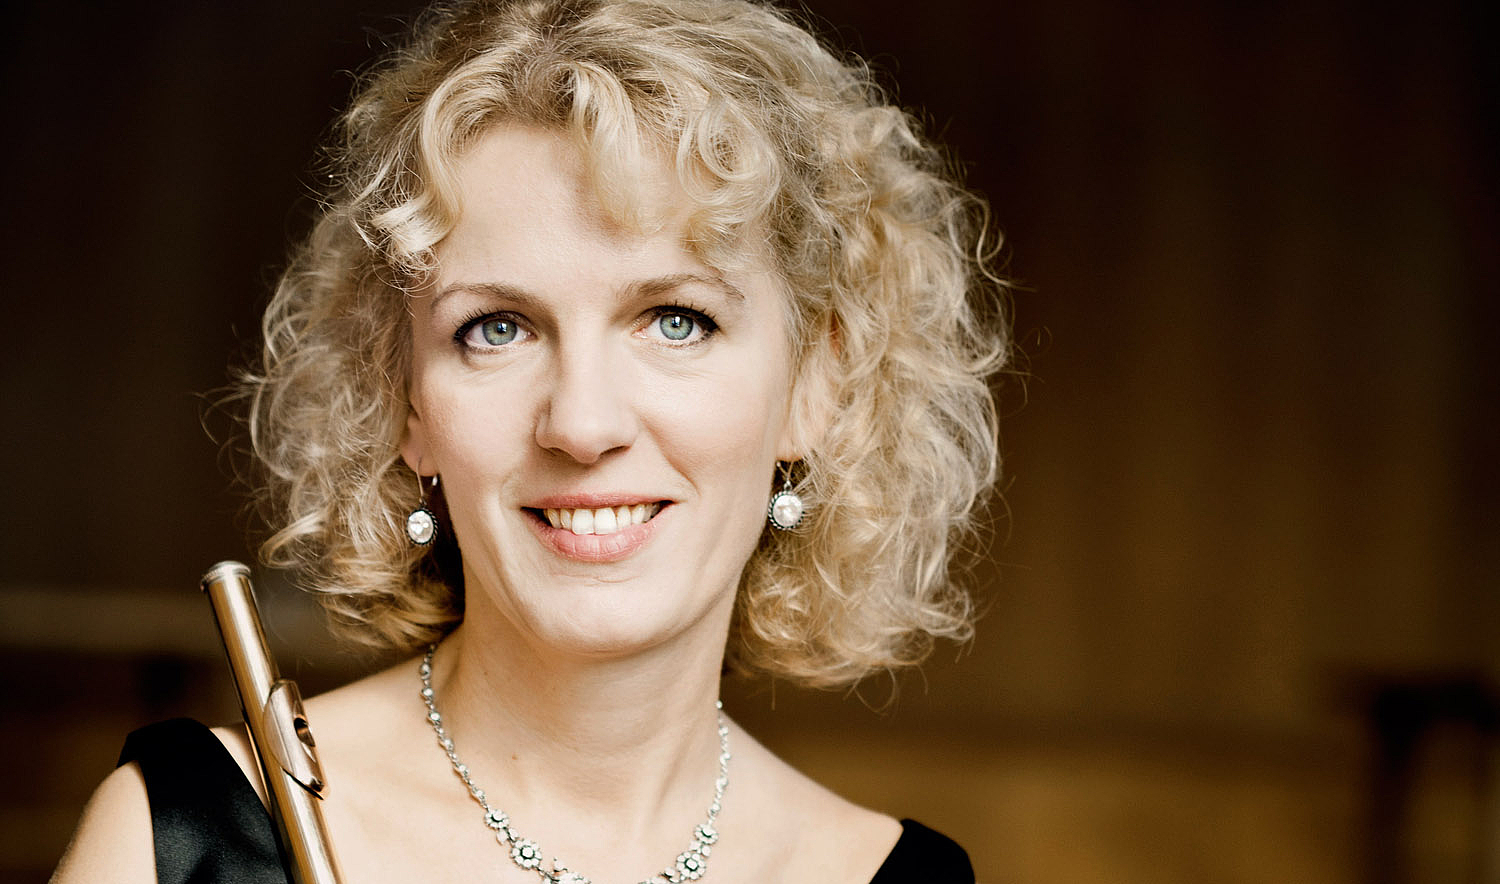 Klangvolles Antrittskonzert: Flötenprofessorin Anna Garzuly-Wahlgren eröffnet die 61. Weimarer Meisterkurse mit ihrem Ensemble „Quintessenz“